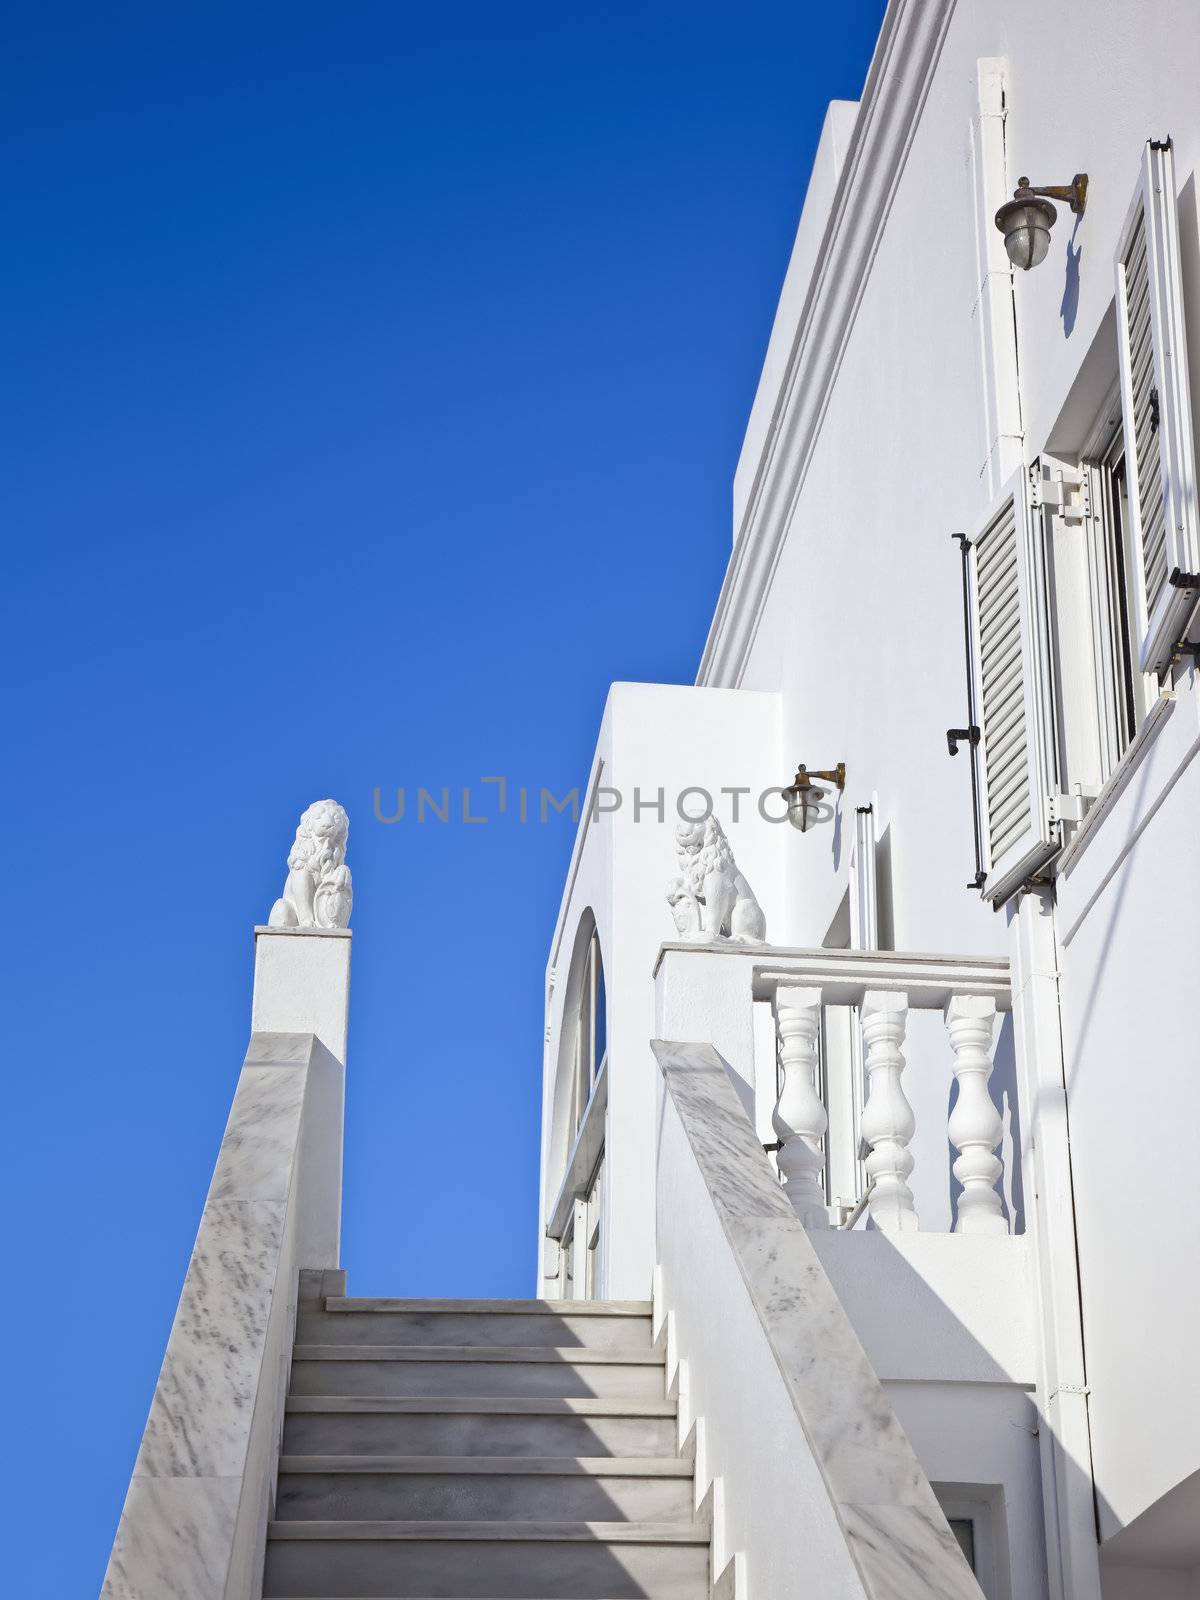 A nice Santorini house and the blue sky